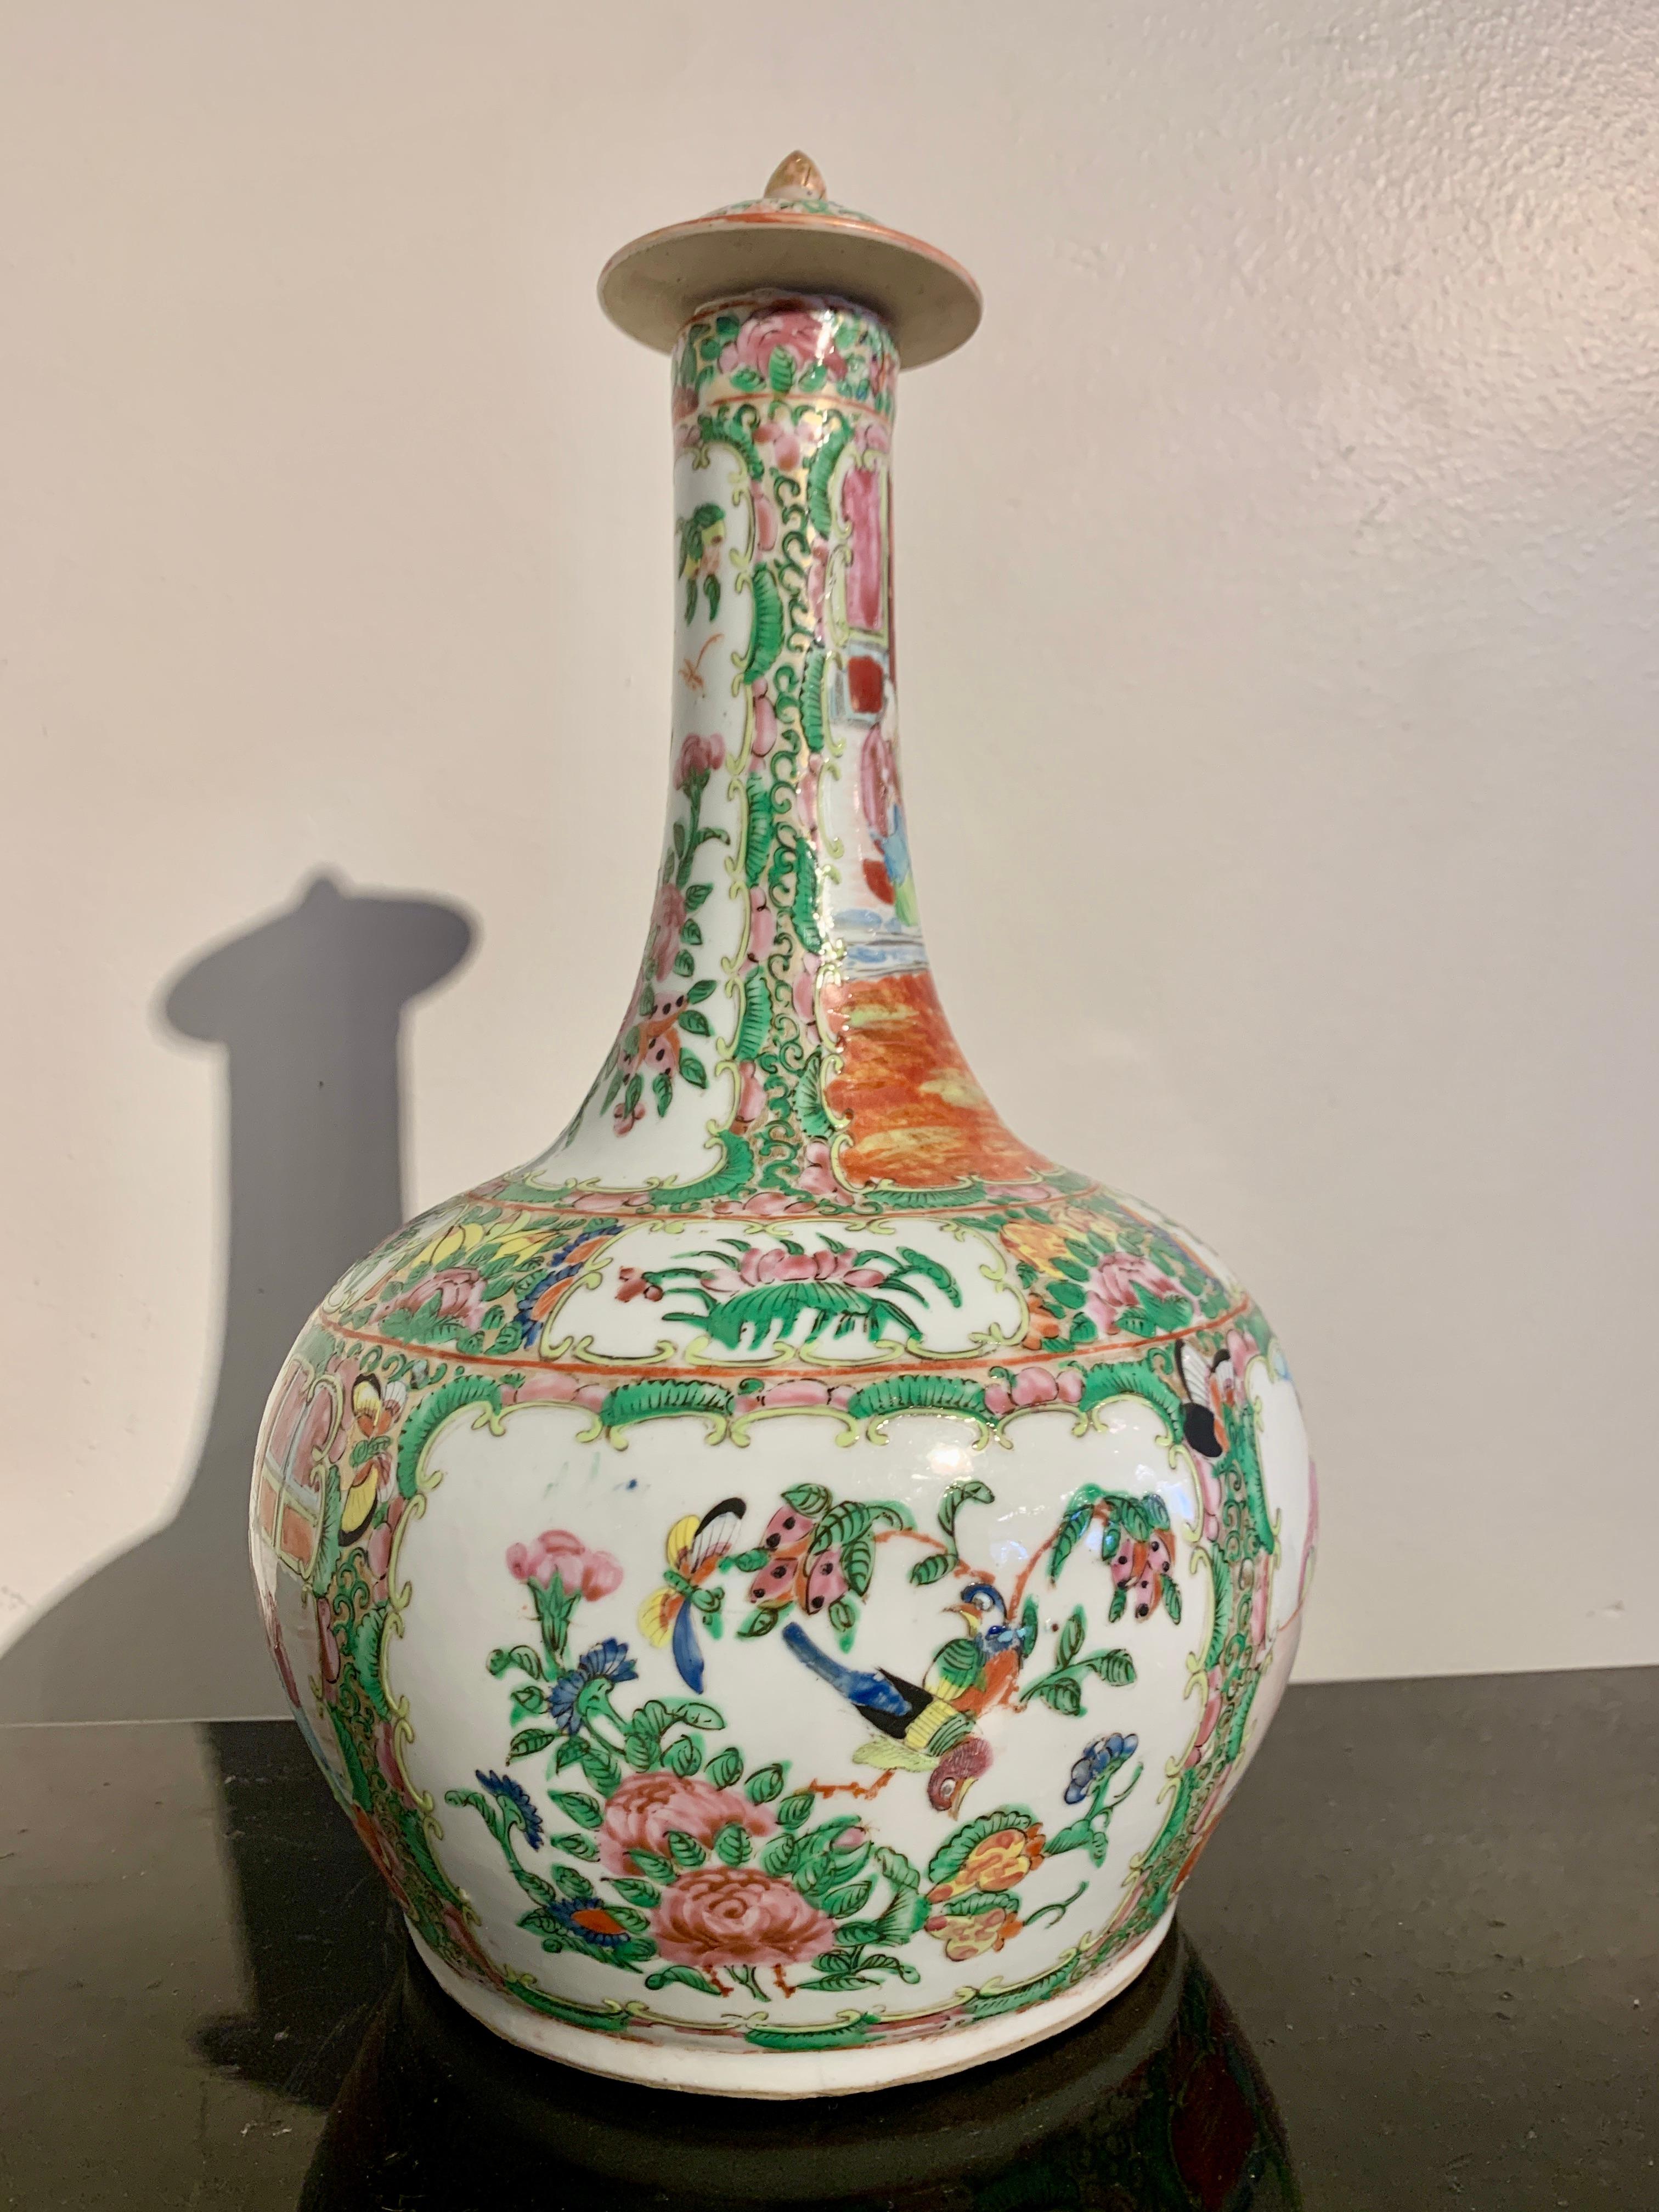 Eine schöne chinesische Export Rose Medallion große Porzellan Flasche Vase und Deckel, Mitte bis Ende des 19. 

Porzellanvase in typischer Flaschenform mit rundem, kugelförmigem Korpus und hohem, schmalem Hals, der von einem gedrungenen Deckel